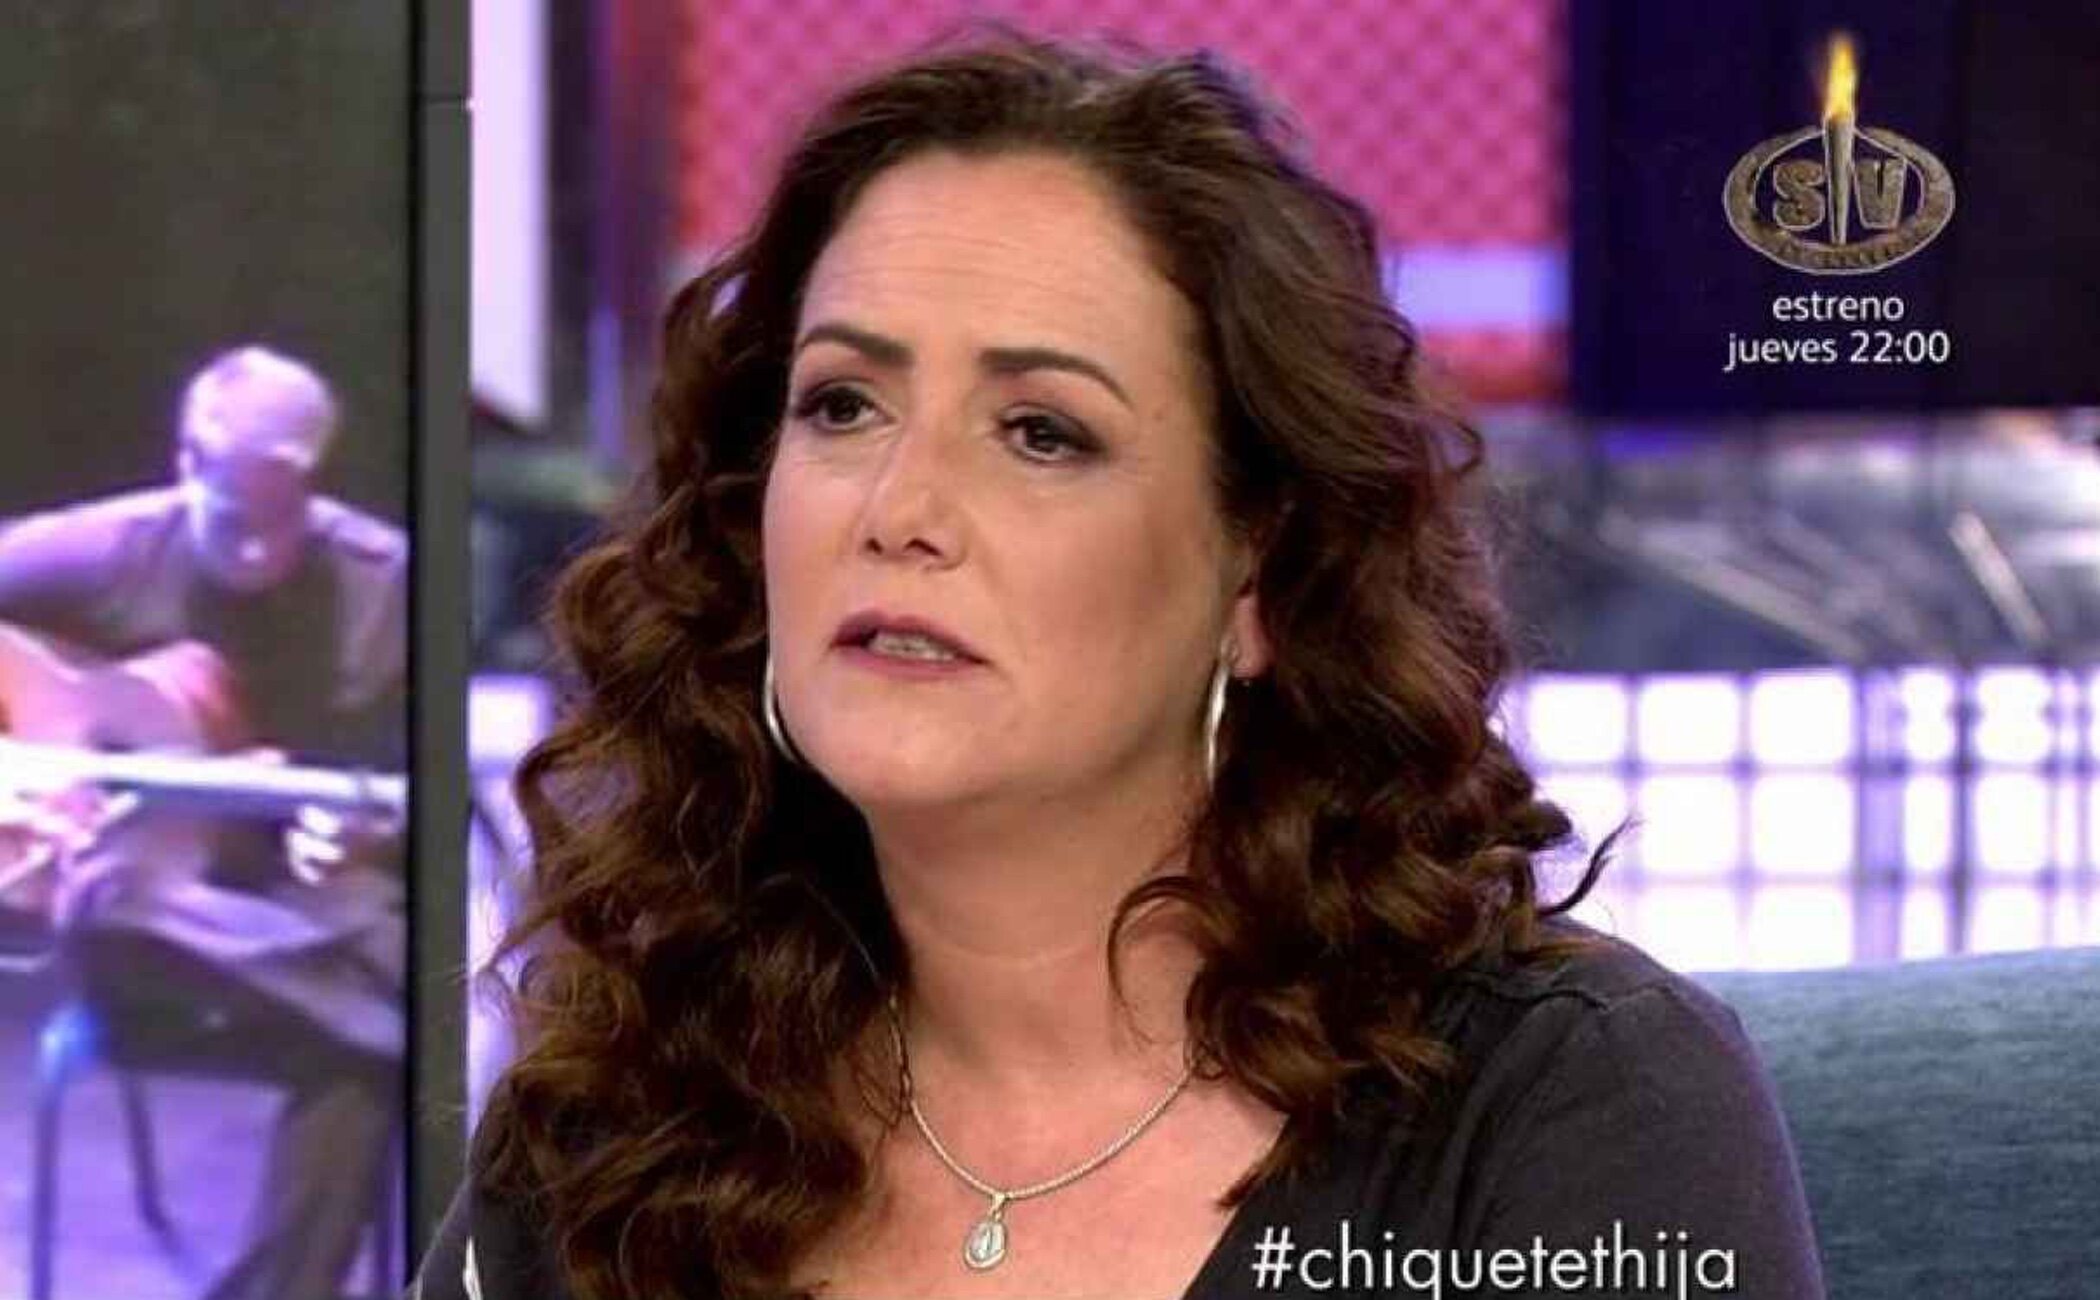 Rocío Cortés, hija de Chiquetete, arremete contra Raquel Bollo y sus hijos: "Dejad a mi padre descansar"